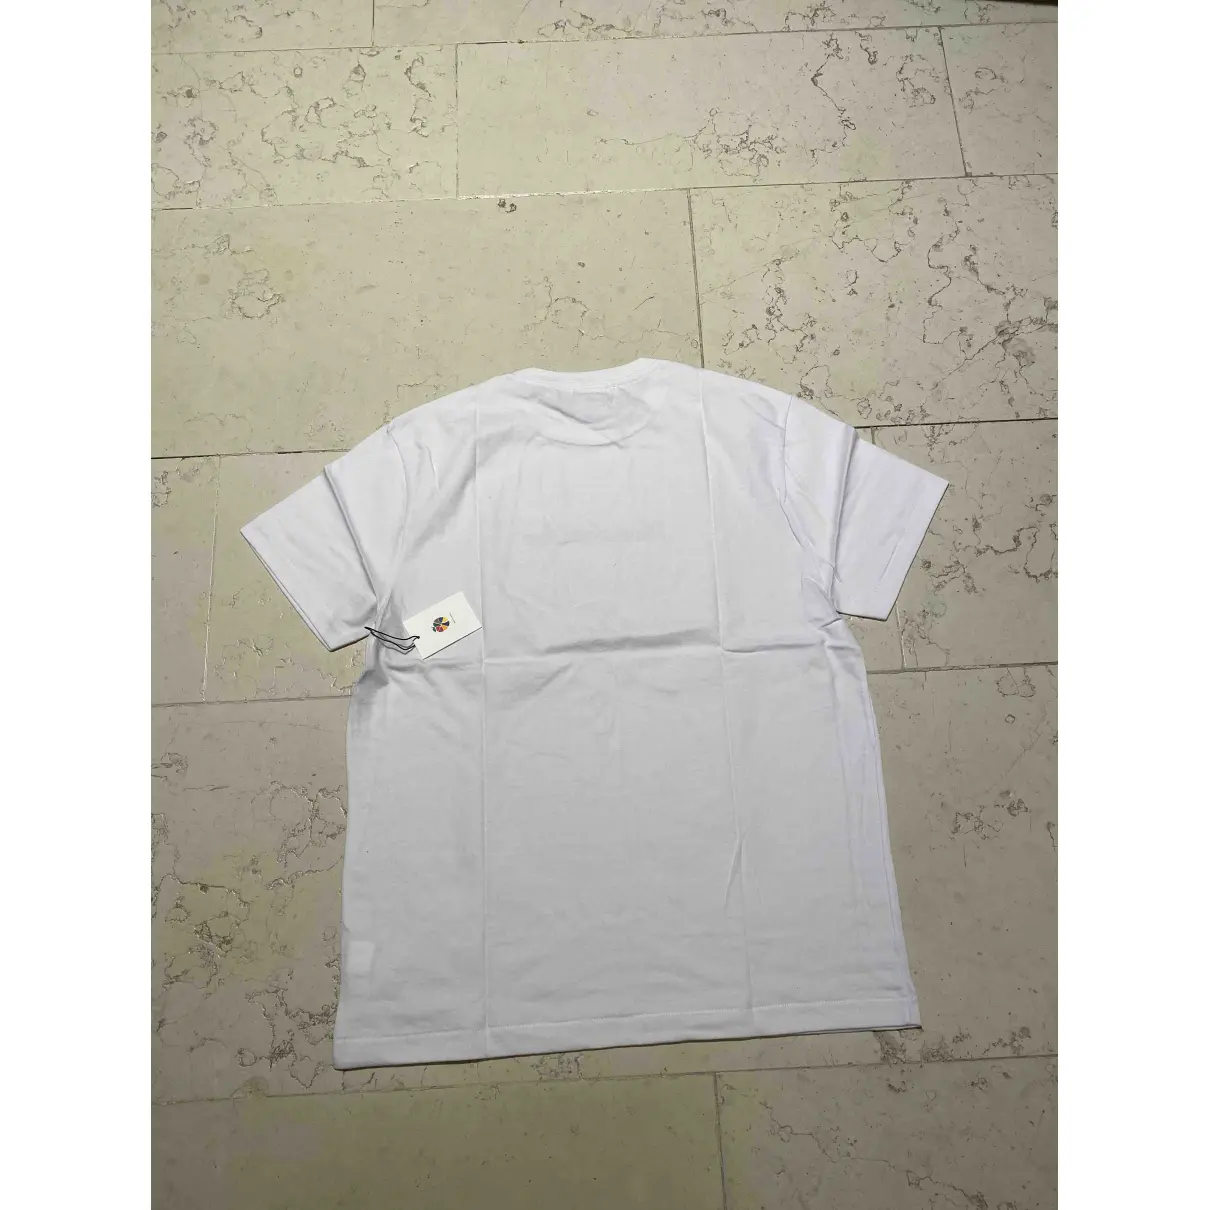 Buy Aime Leon Dore White Cotton T-shirt online